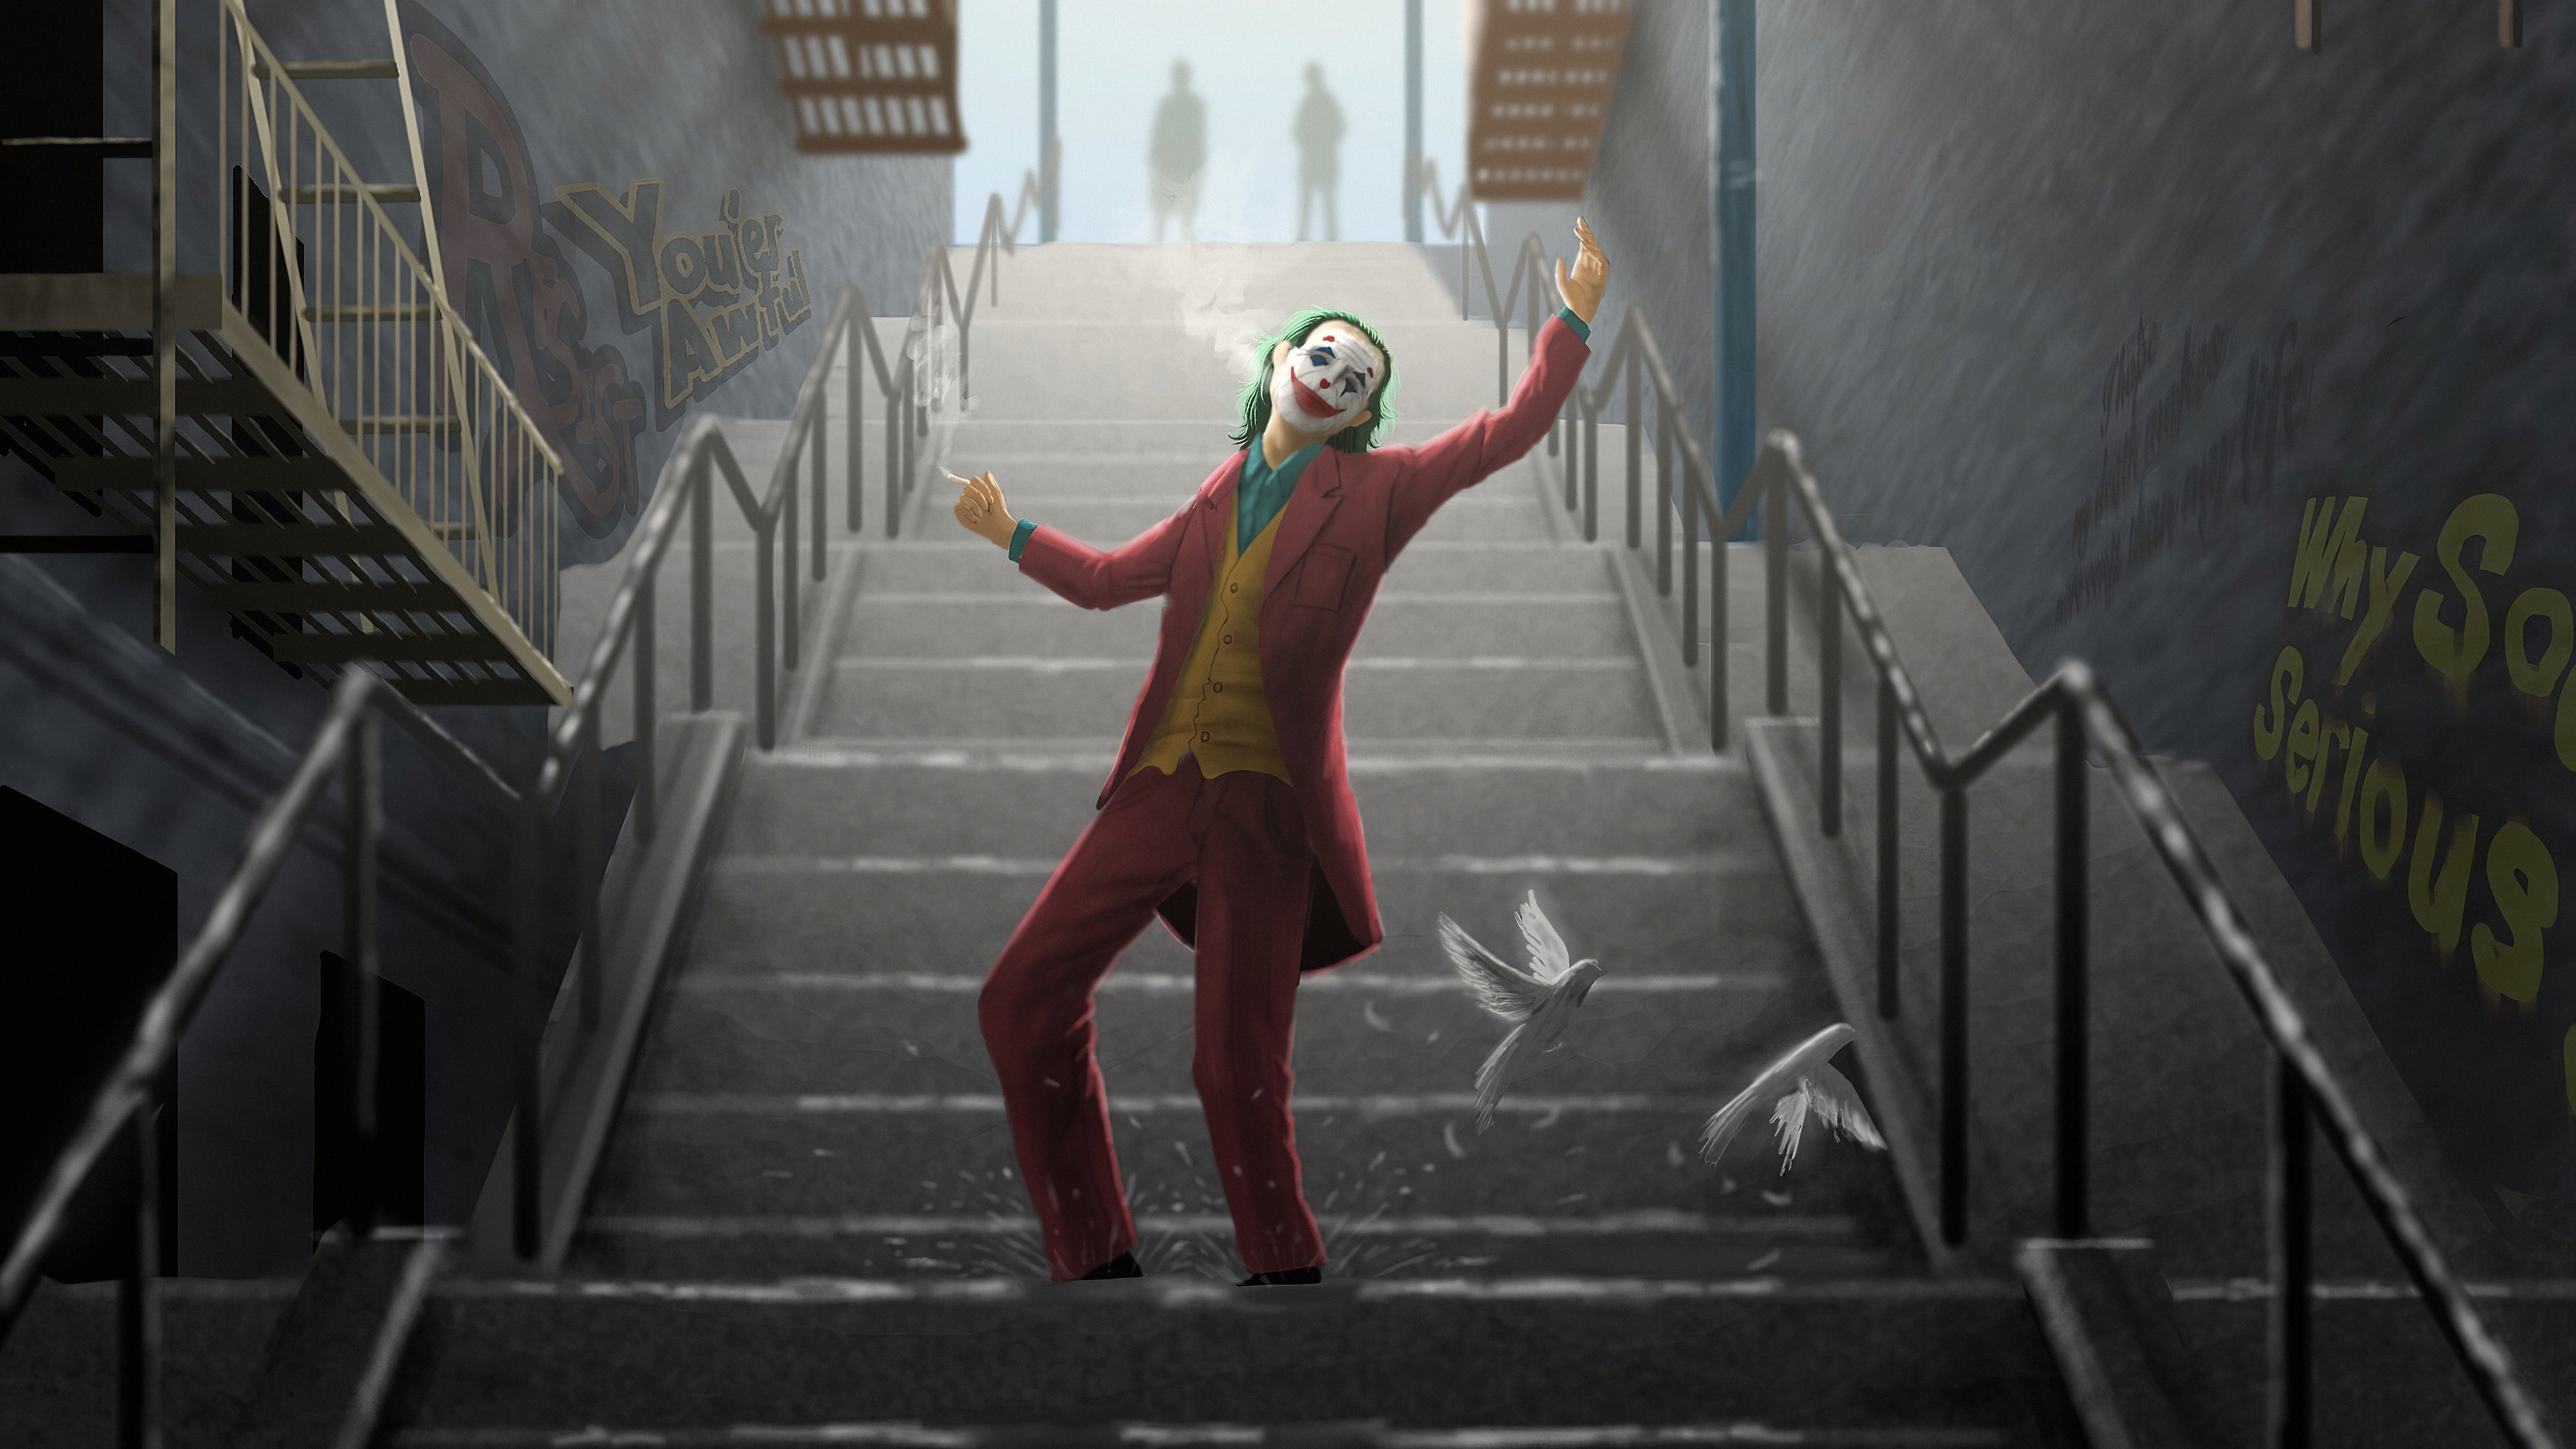 Joker 4k Ultra HD Wallpaper by Ben Kenobi